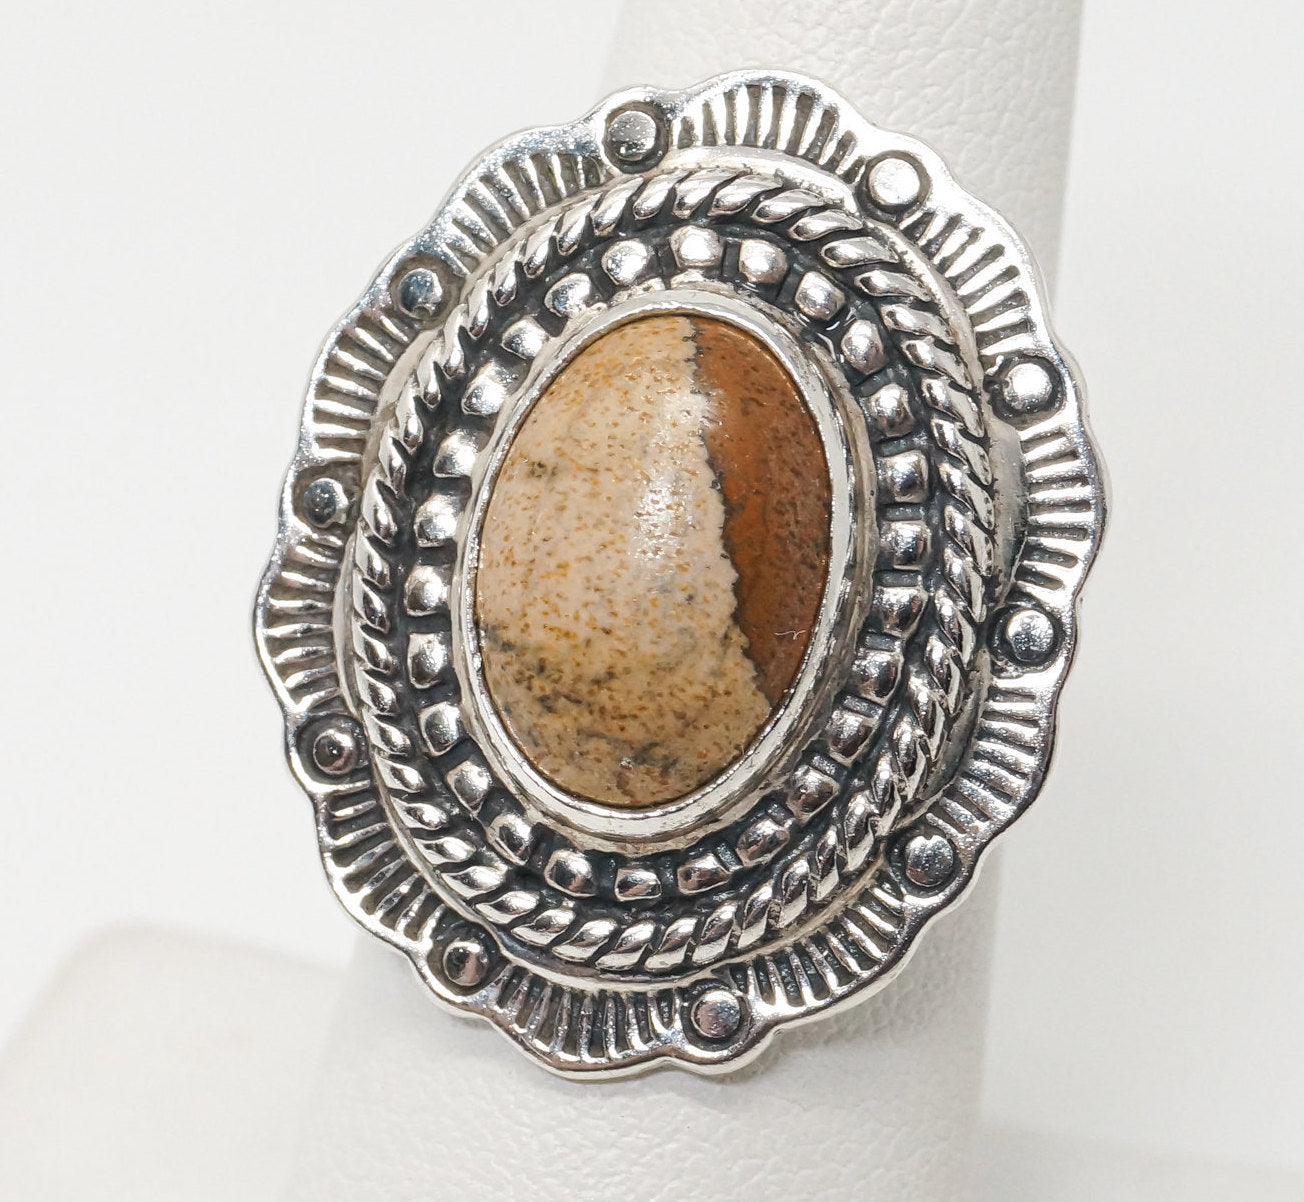 Vintage Native Designer Carolyn Pollack Jasper Sterling Silver Ring SZ 6.75